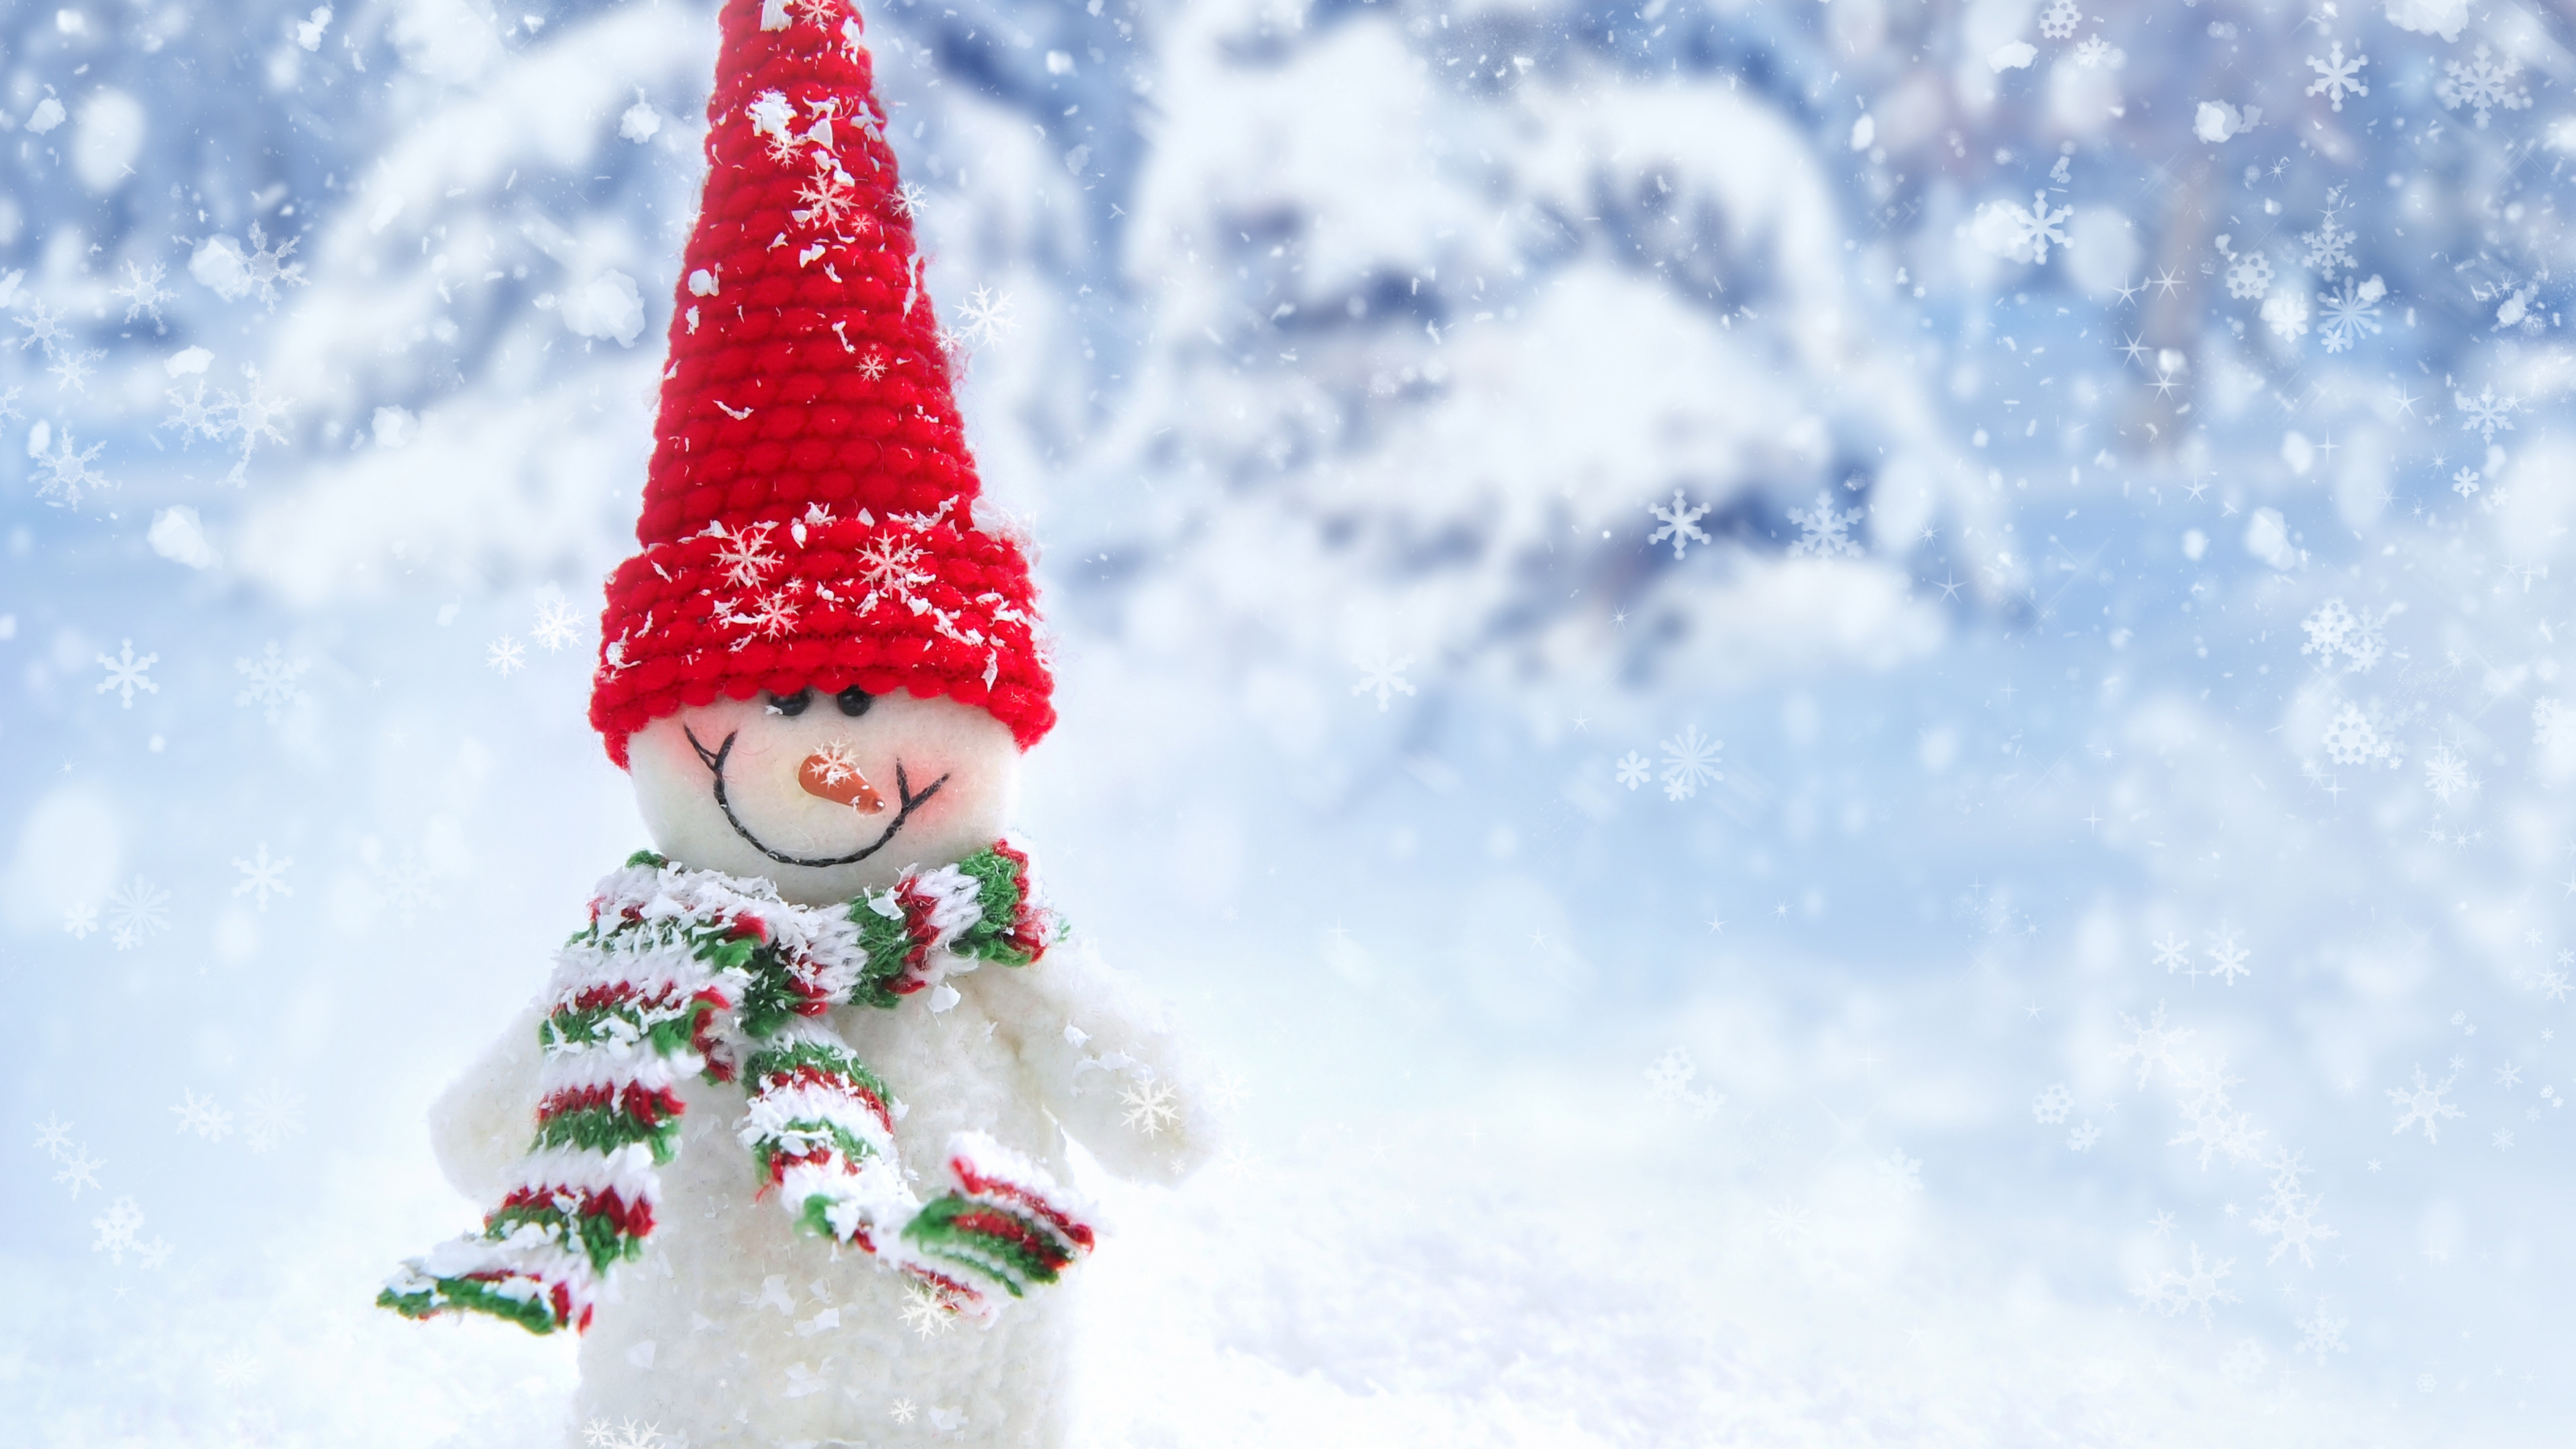 雪人, 冬天, 圣诞树, 圣诞节, 圣诞节的装饰品 壁纸 3840x2160 允许